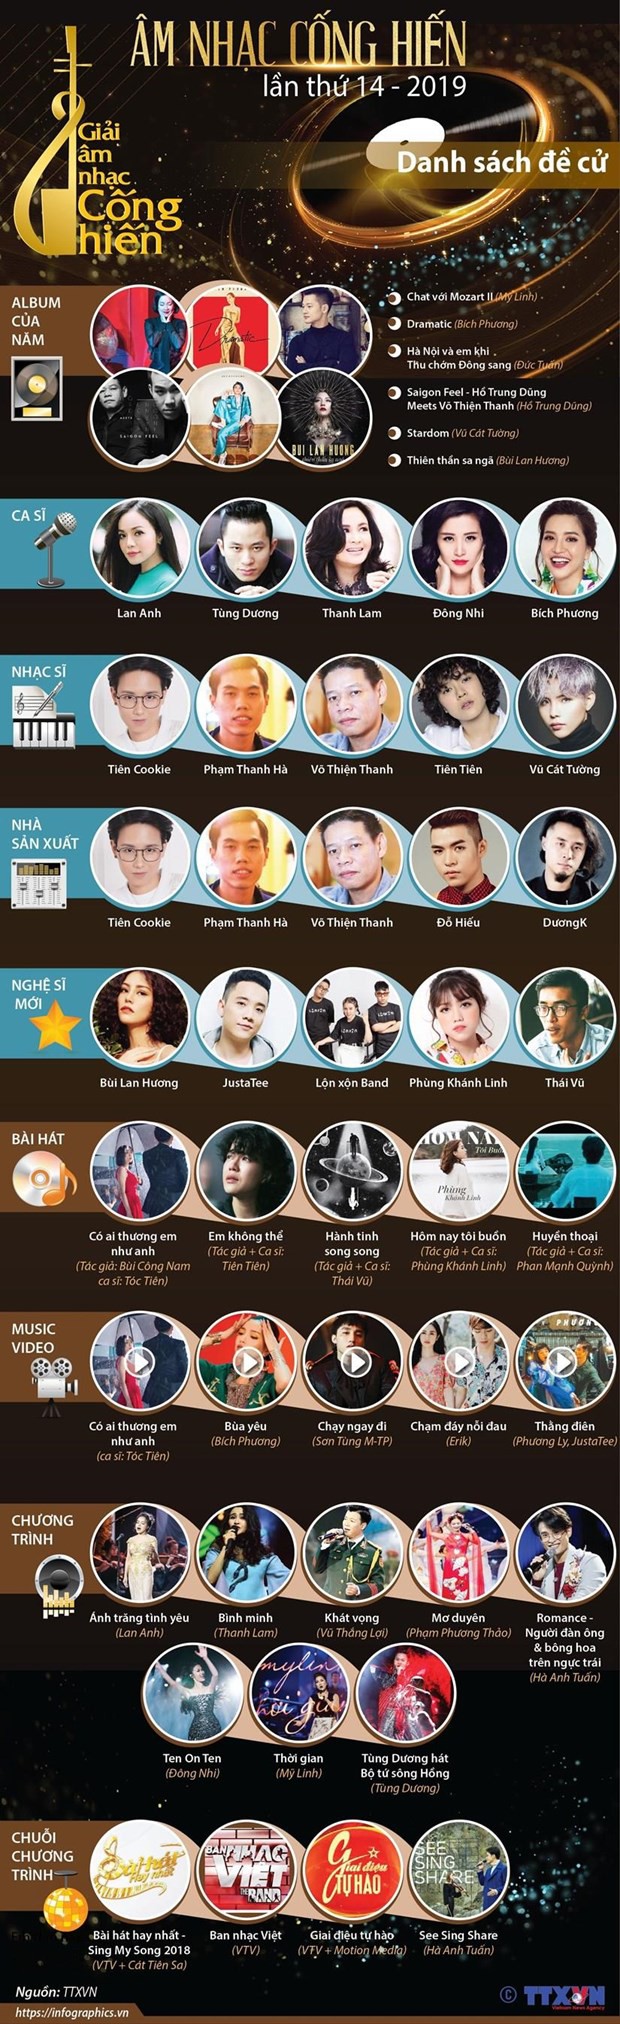 Loạt sao Việt nổi tiếng sẽ tham gia trình diễn tại lễ trao giải Âm nhạc Cống hiến - Ảnh 2.